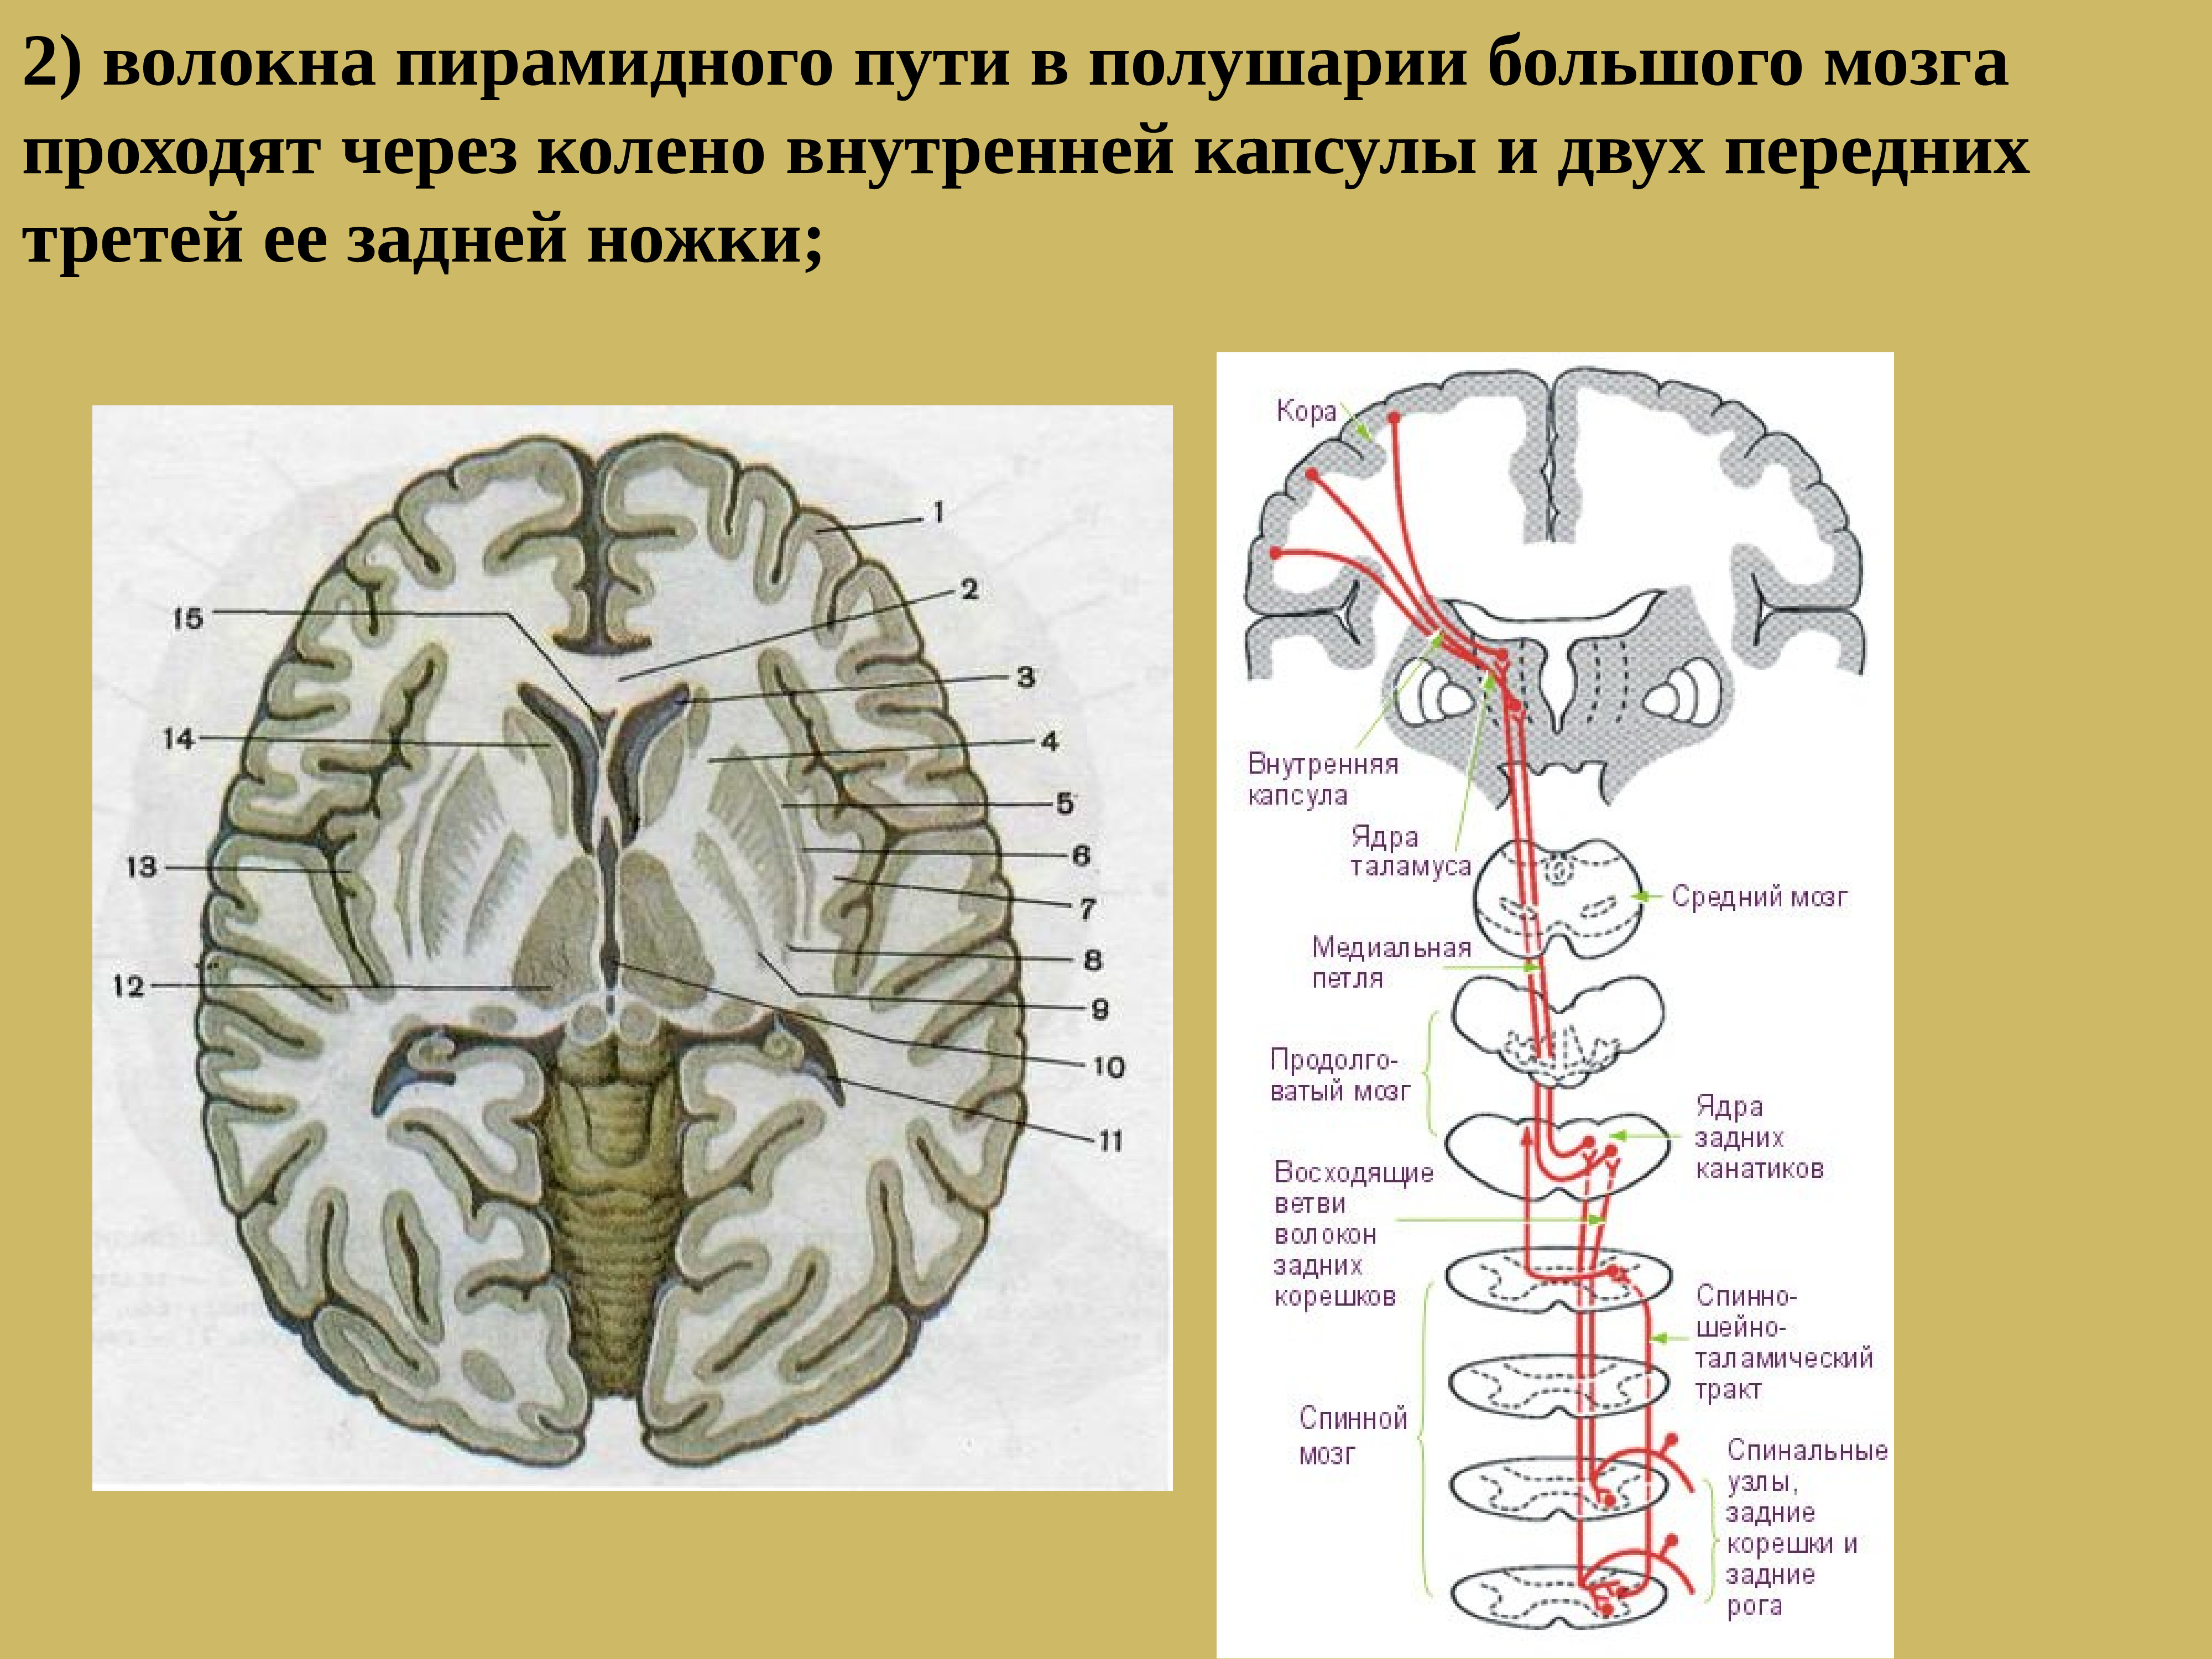 Все проходит через мозг. Пирамидные пути спинного мозга. Лучистый венец головного мозга и внутренняя капсула. Лучистый венец головного мозга. Пирамидные пути внутренней капсулы.